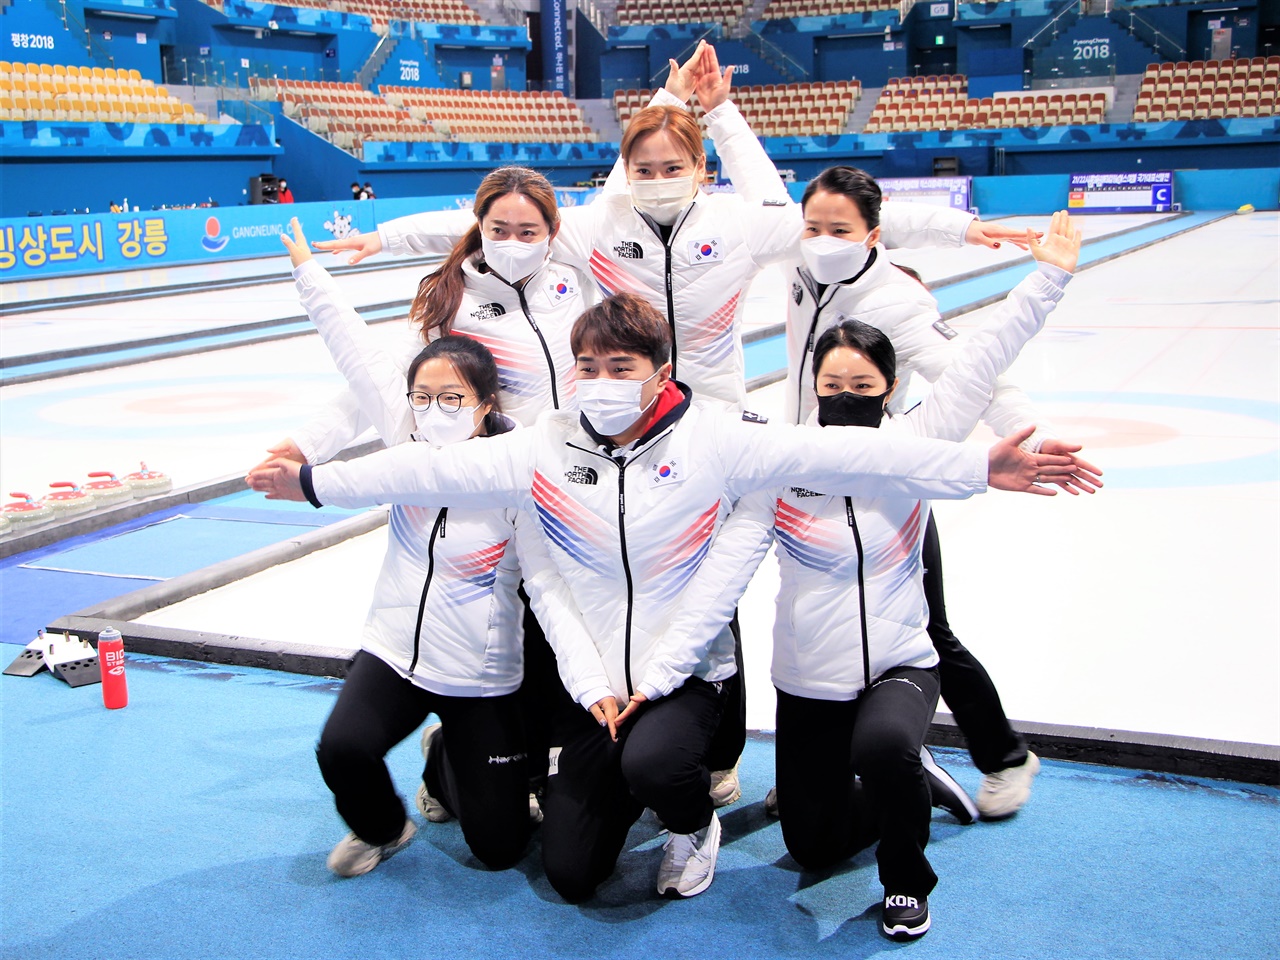  컬링 여자 대표팀 '팀 킴' 선수들이 미디어데이에서 '컬링의 별' 포즈를 취하고 있다.